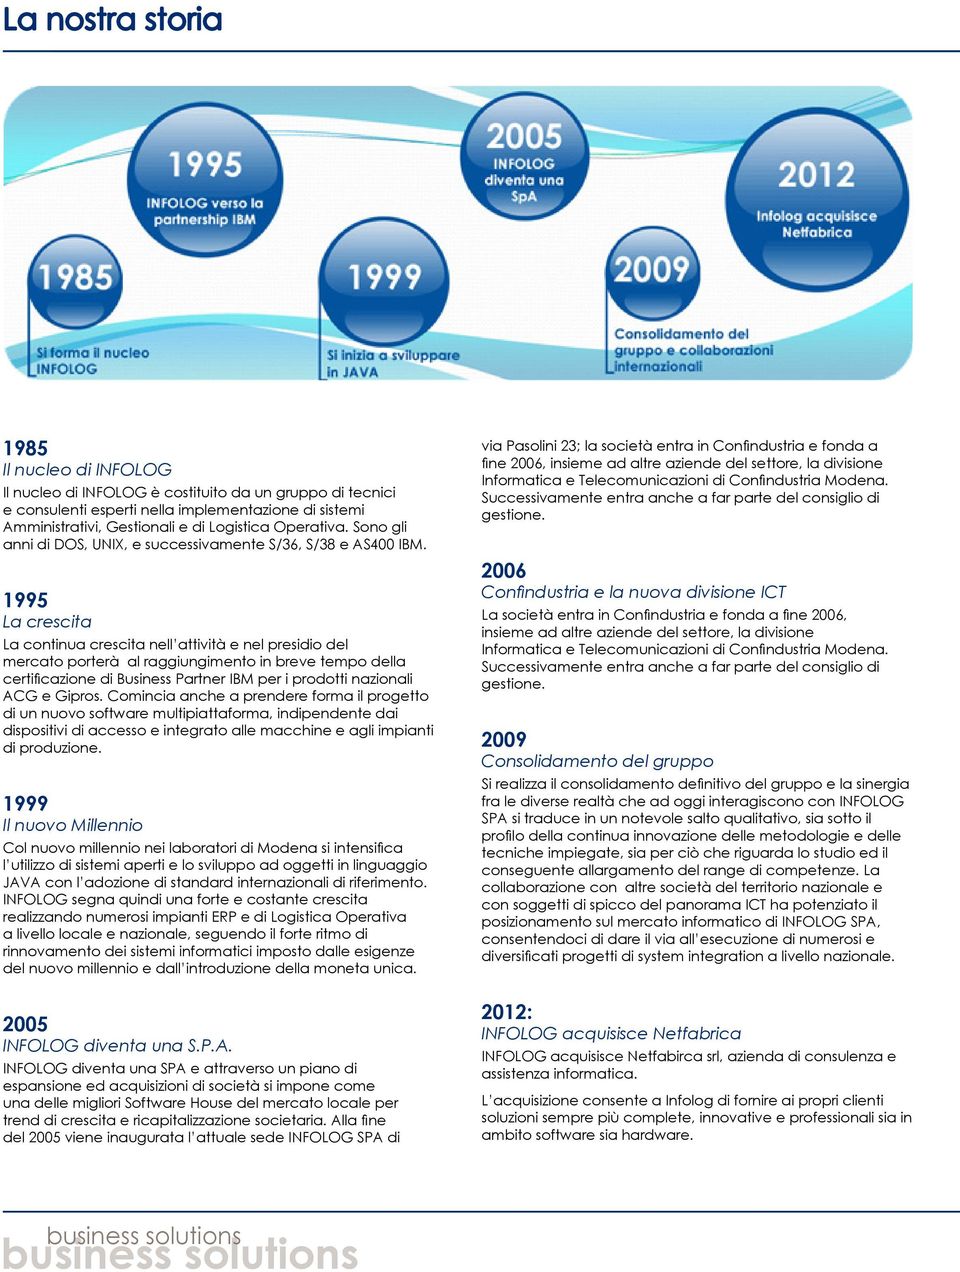 1995 La crescita La continua crescita nell attività e nel presidio del mercato porterà al raggiungimento in breve tempo della certificazione di Business Partner IBM per i prodotti nazionali ACG e